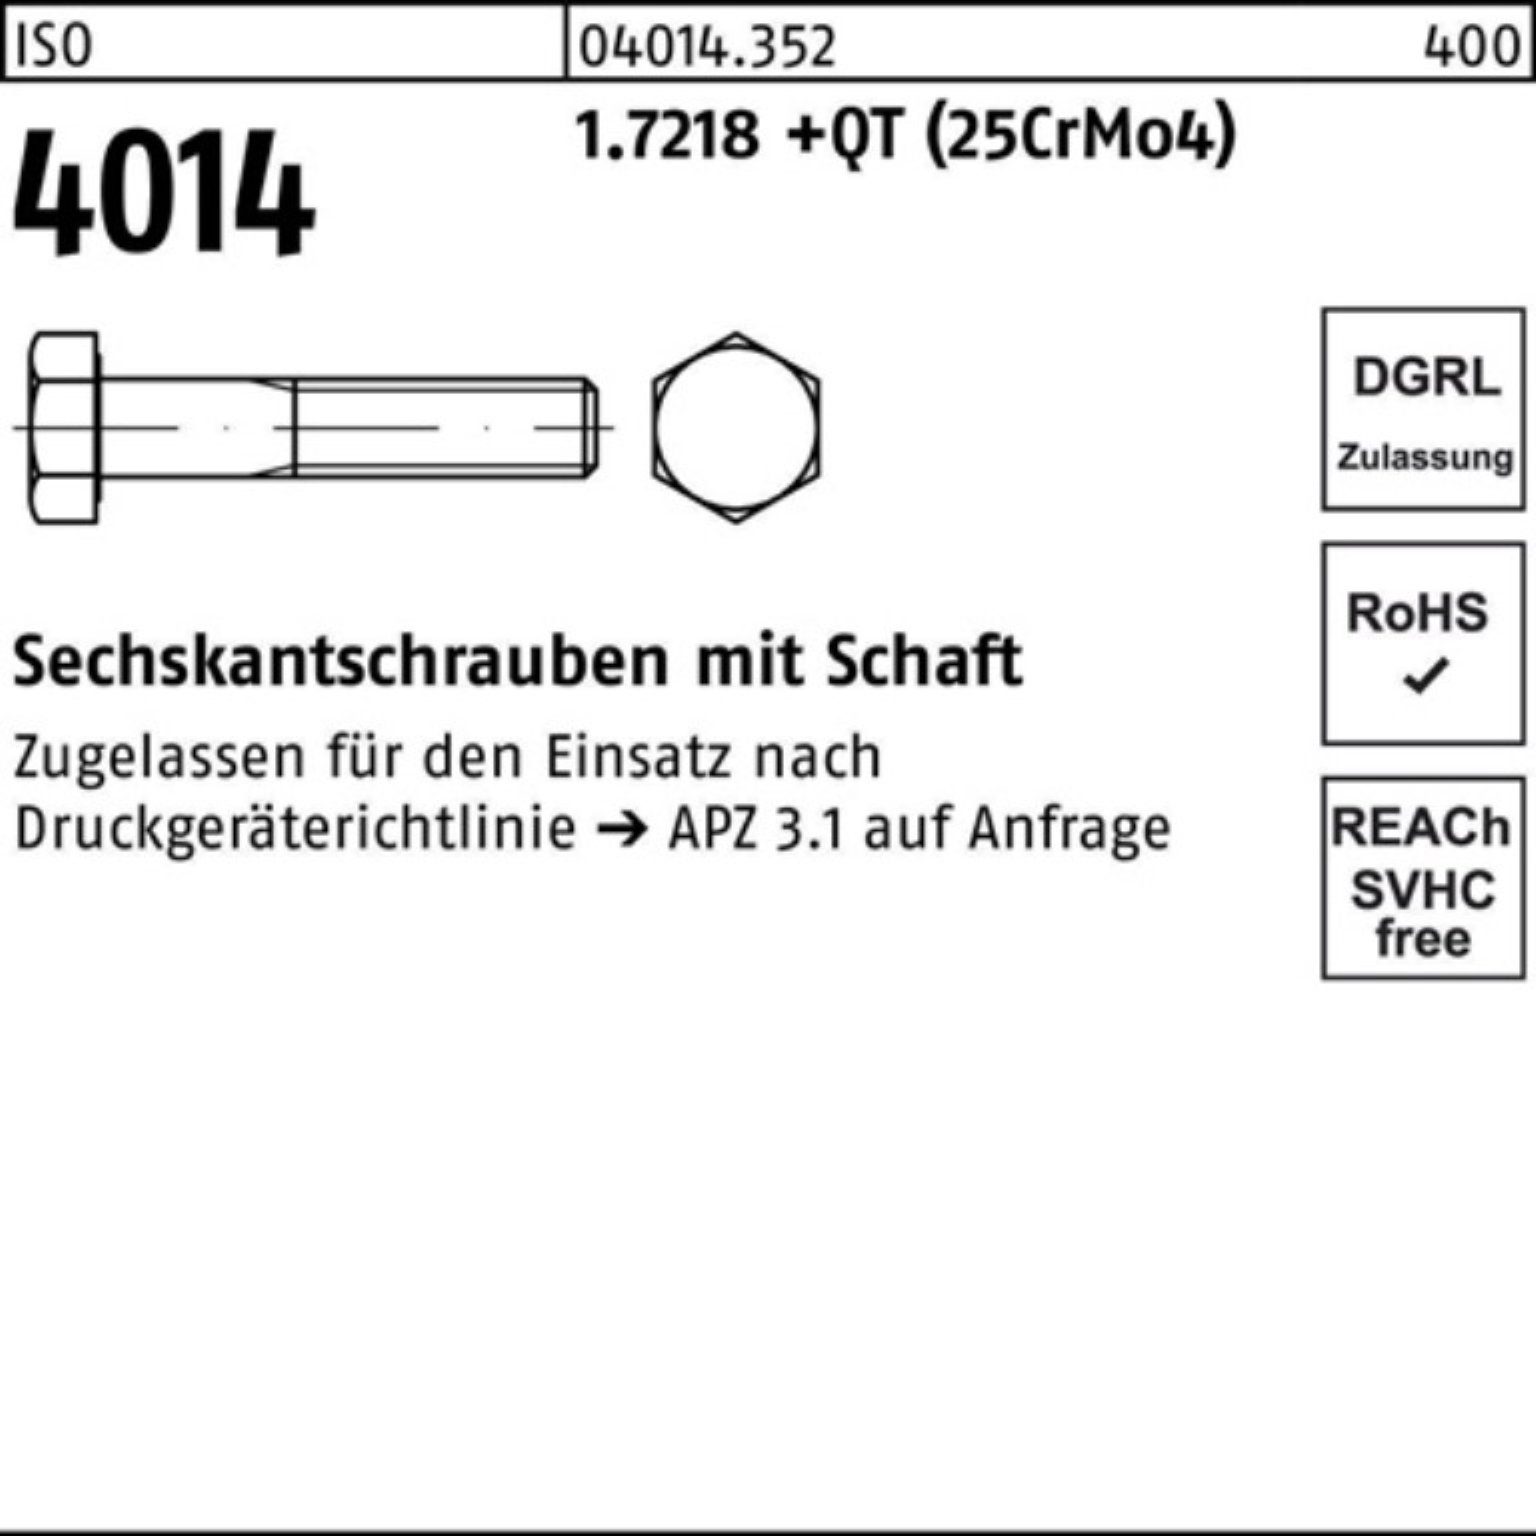 ISO 1.7218 160 Bufab Sechskantschraube 100er M33x 4014 Schaft (25Cr Pack +QT Sechskantschraube